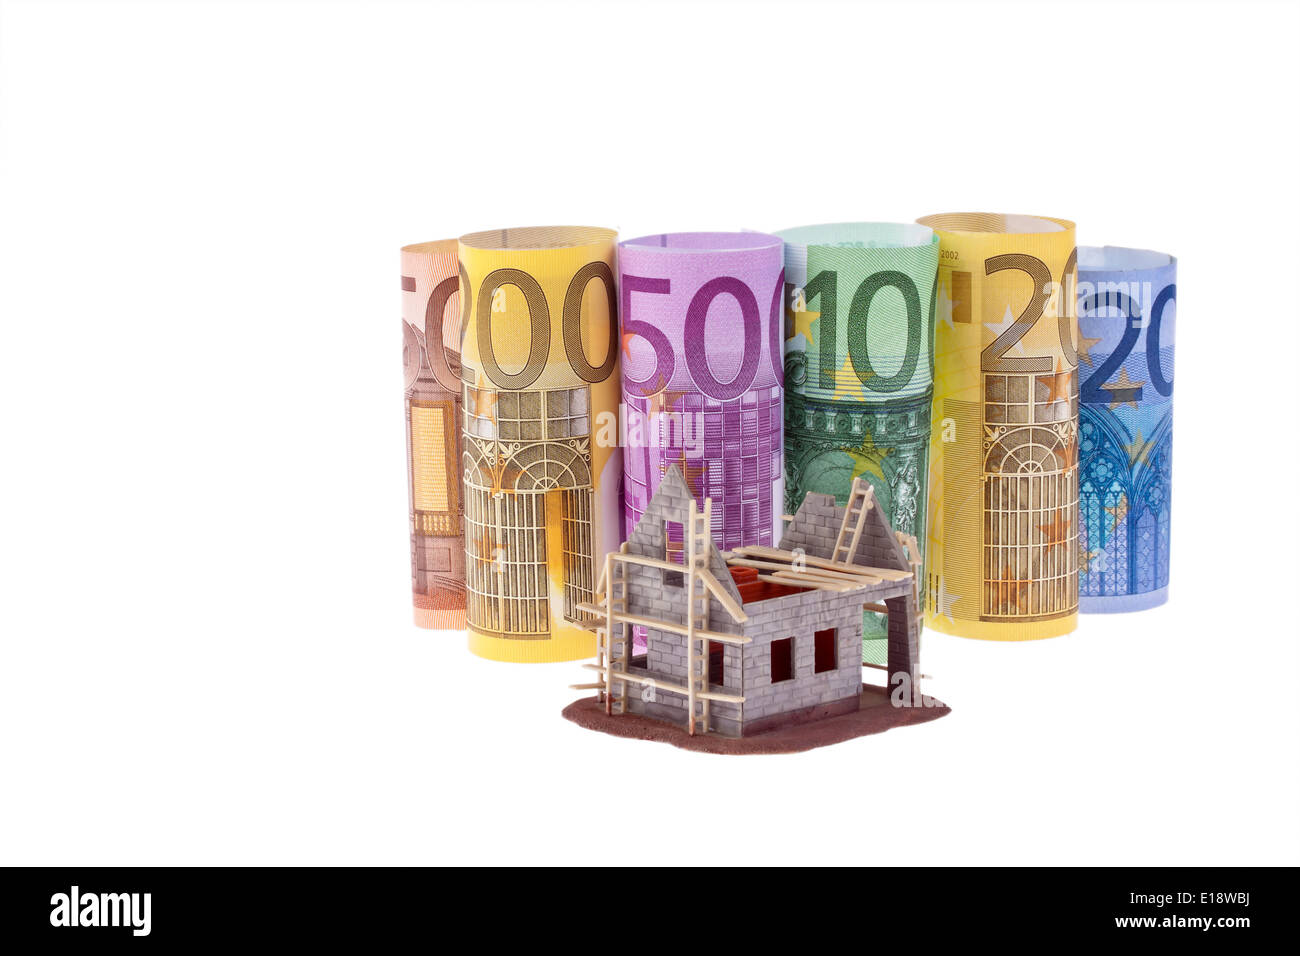 Viele Euro Geldscheine mit Rohbau Haus Stock Photo